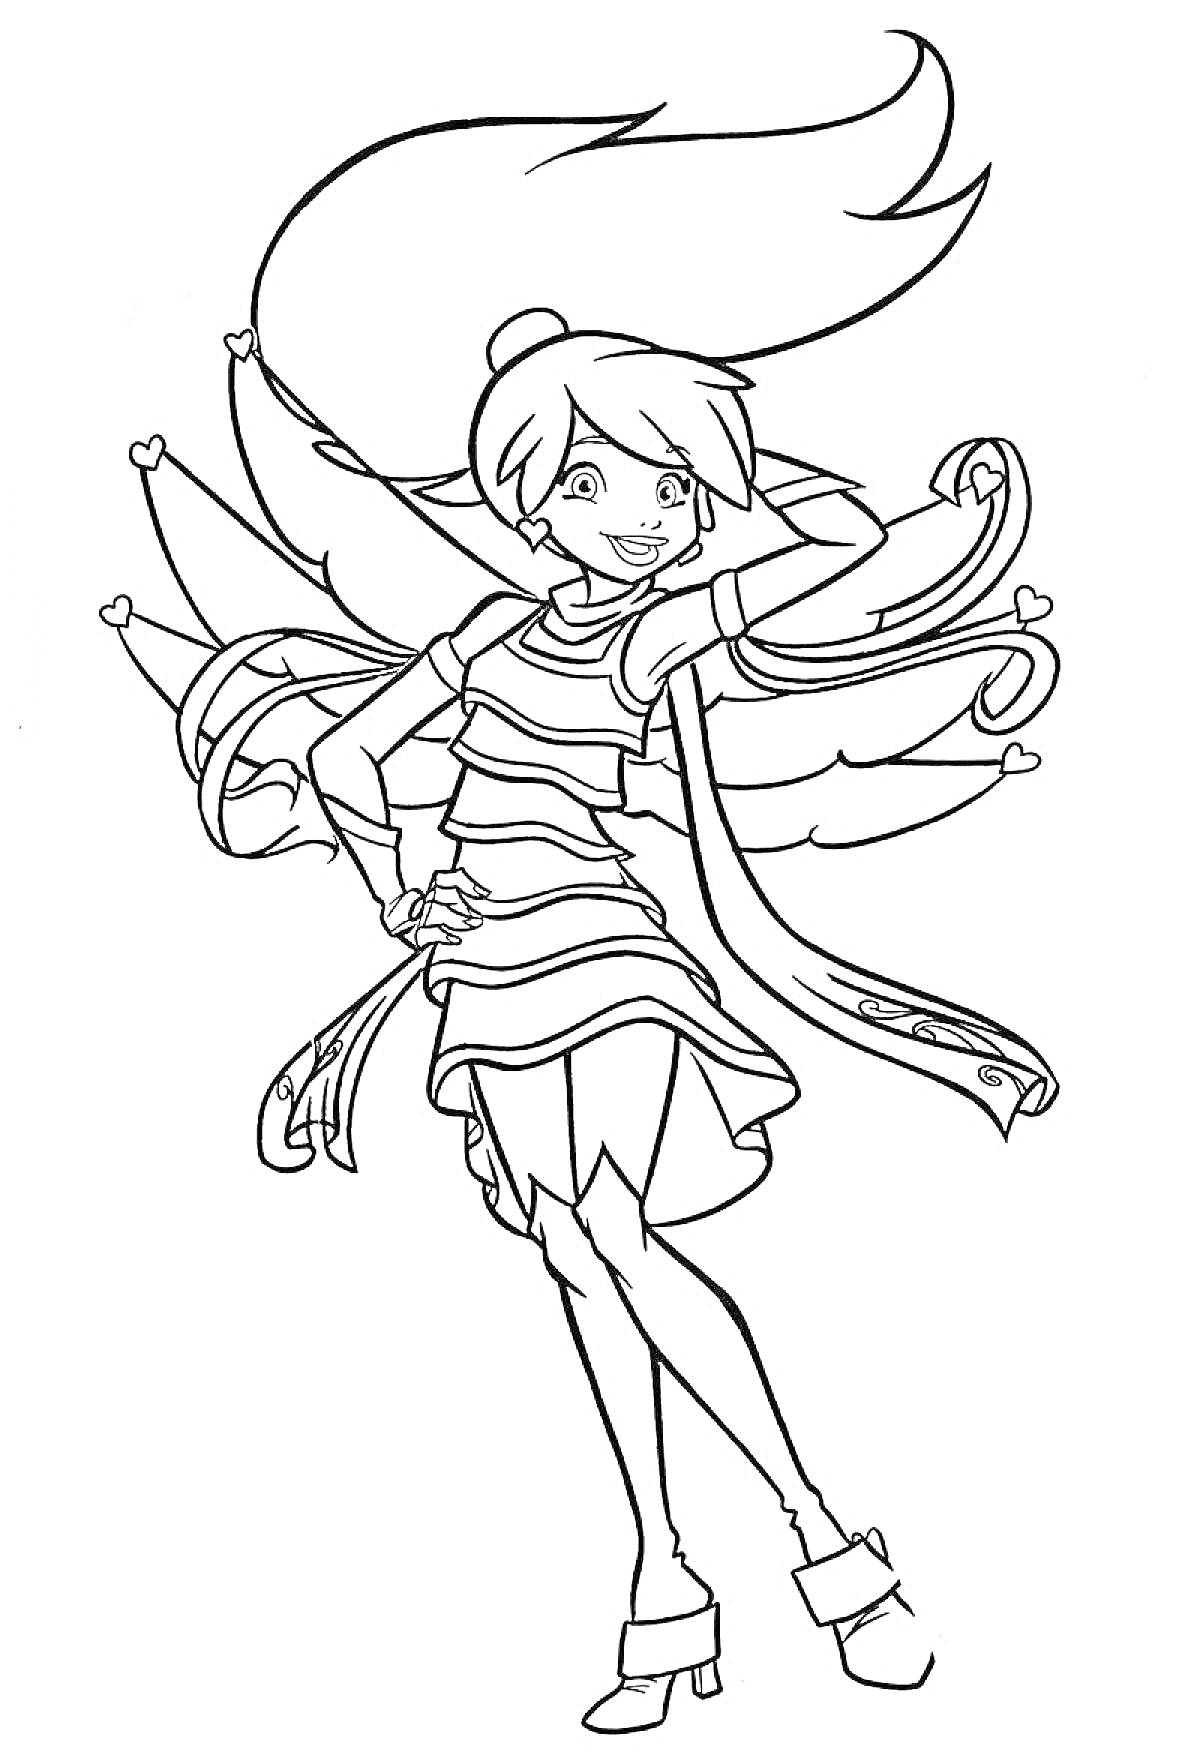 Раскраска Девочка-ангел с крыльями, стоящая в уверенной позе с развевающимися волосами